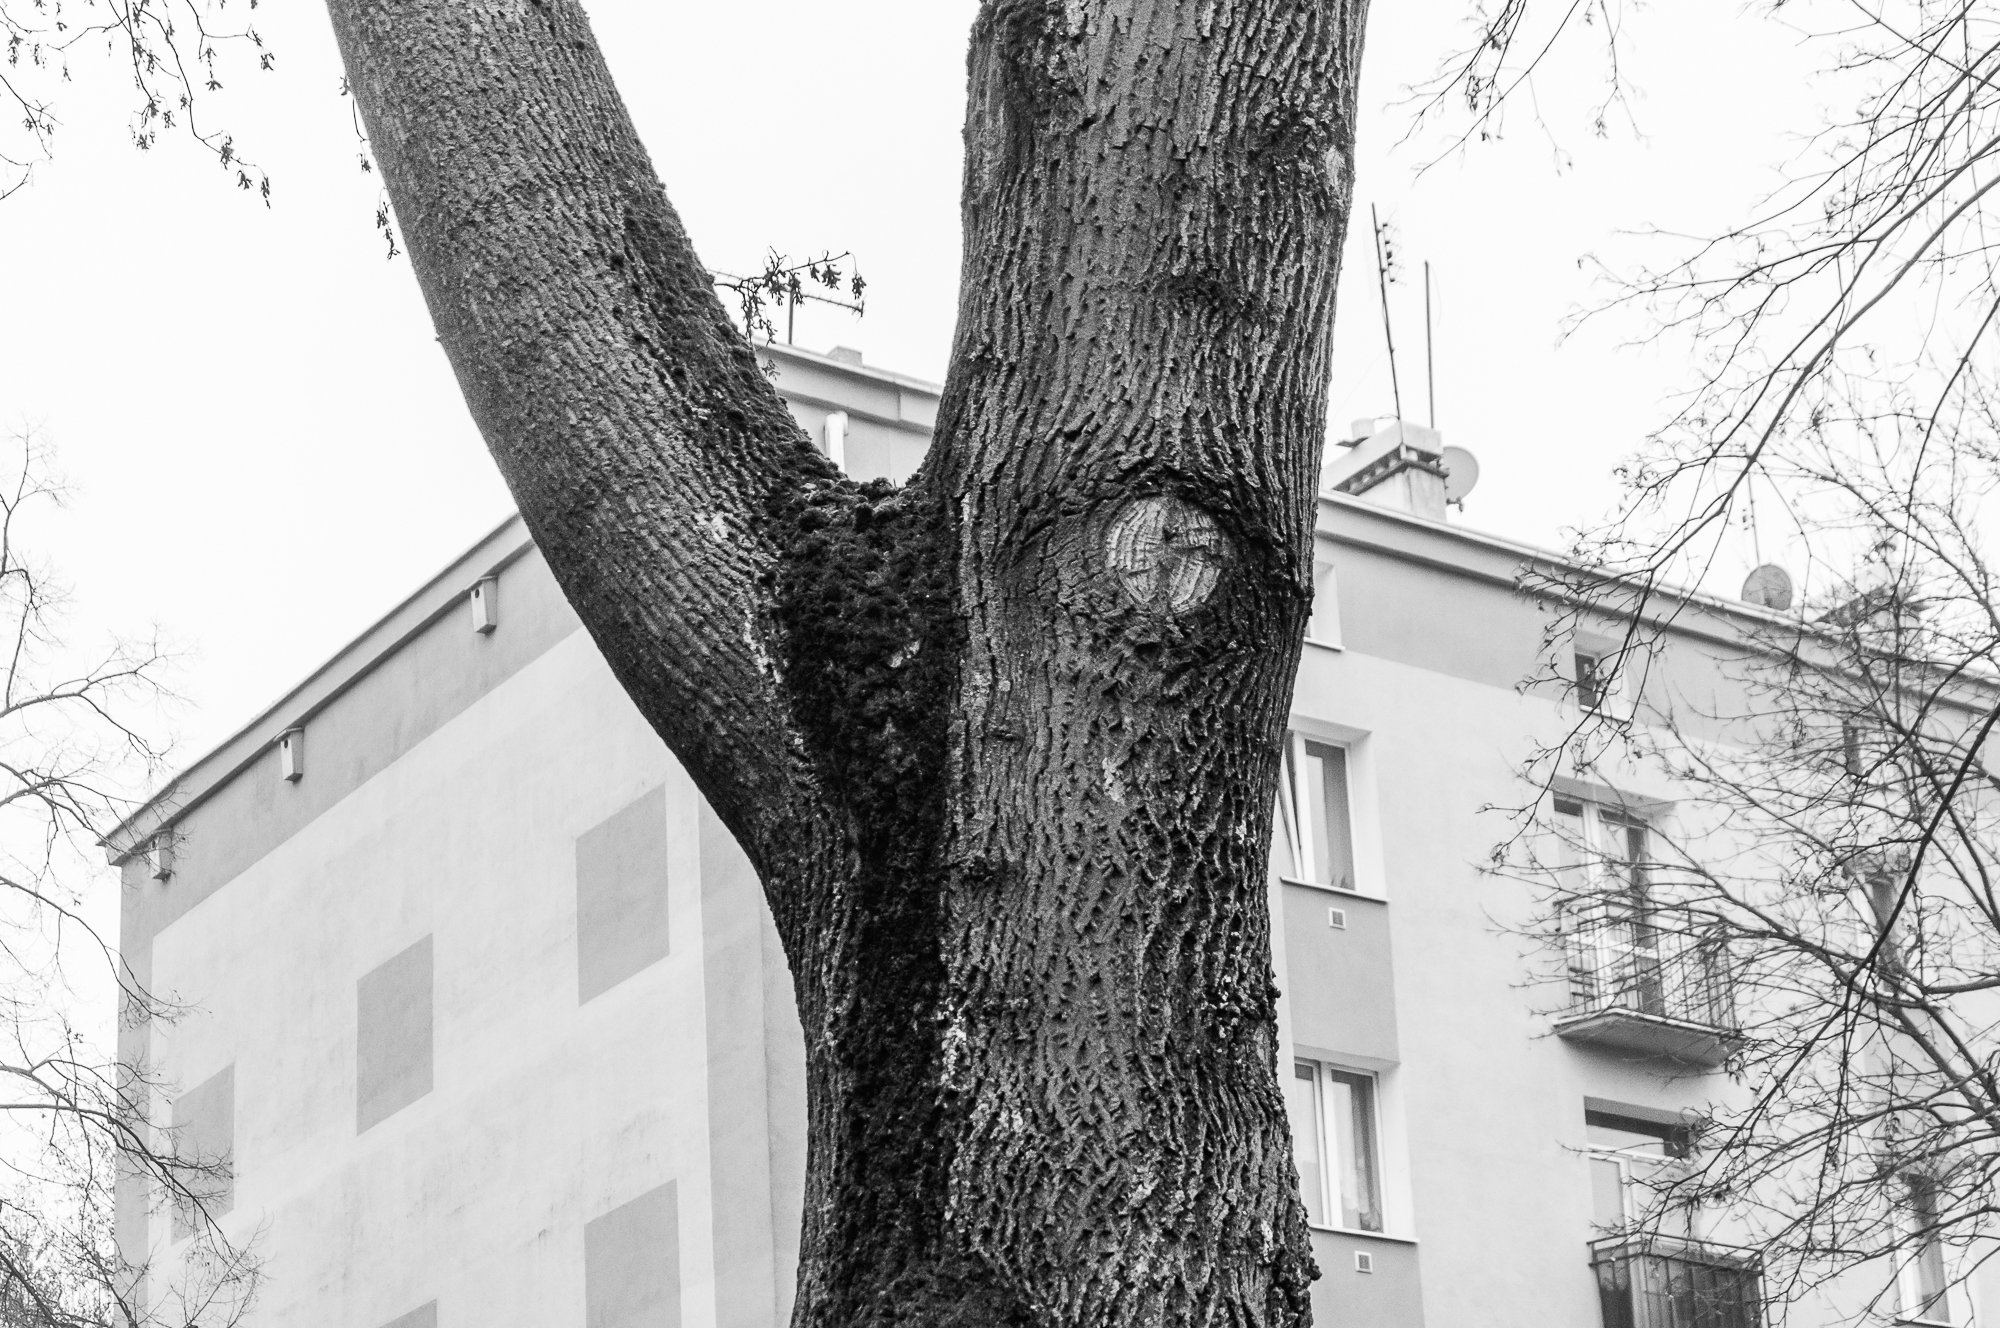 Adam Mazek Photography Warsaw 2020. Post: "Documenting reality." Minimalism. Tree.